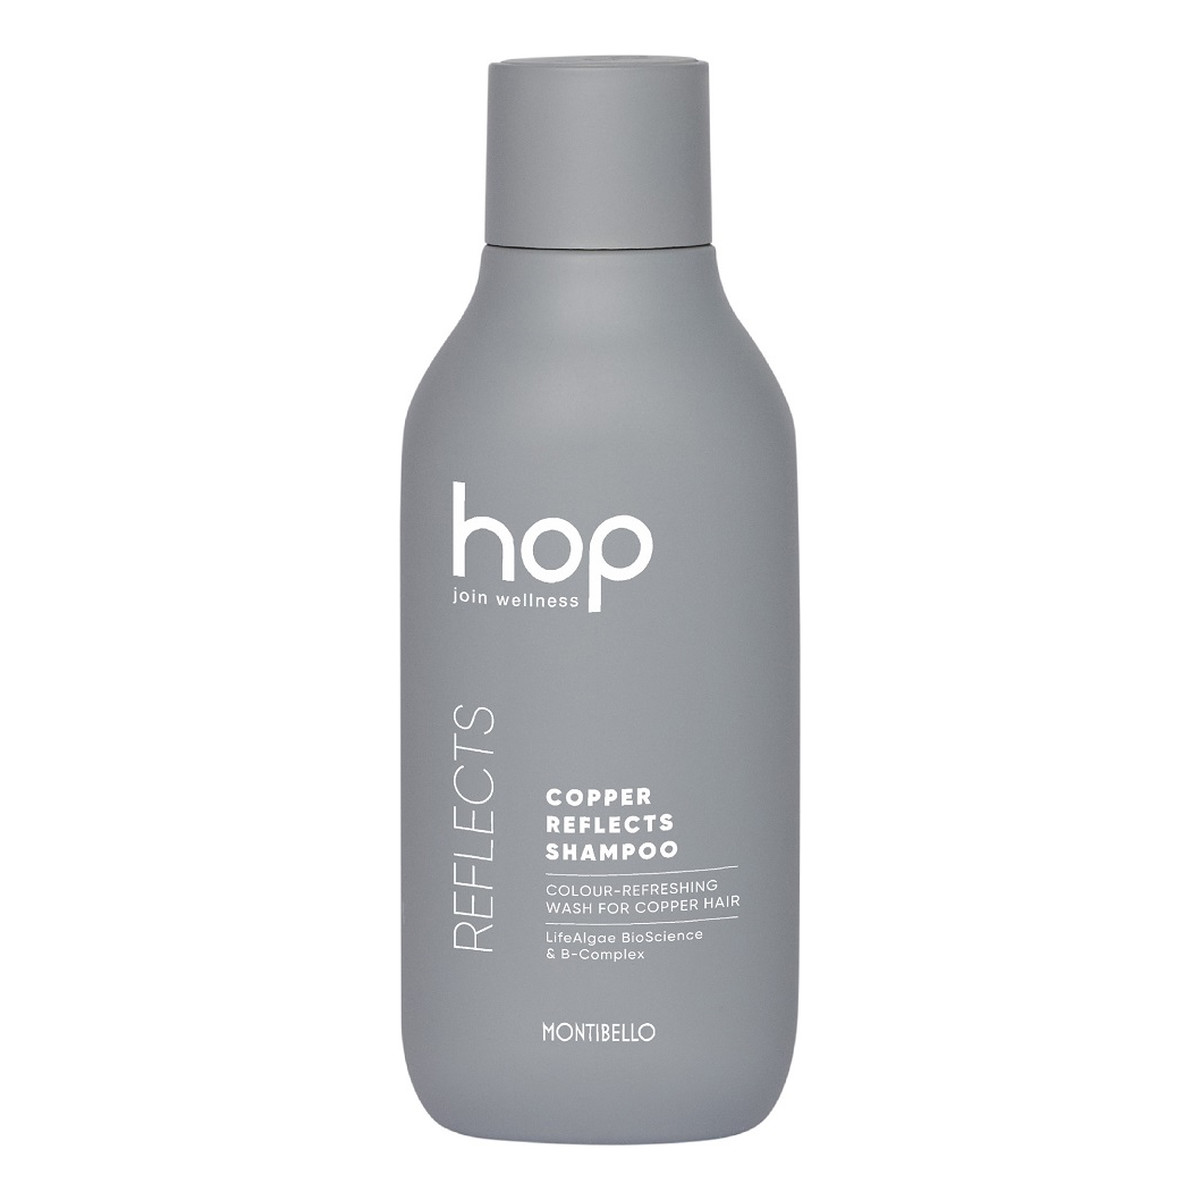 Montibello Hop copper reflects shampoo szampon podkreślający kolor do włosów miedzianych 300ml